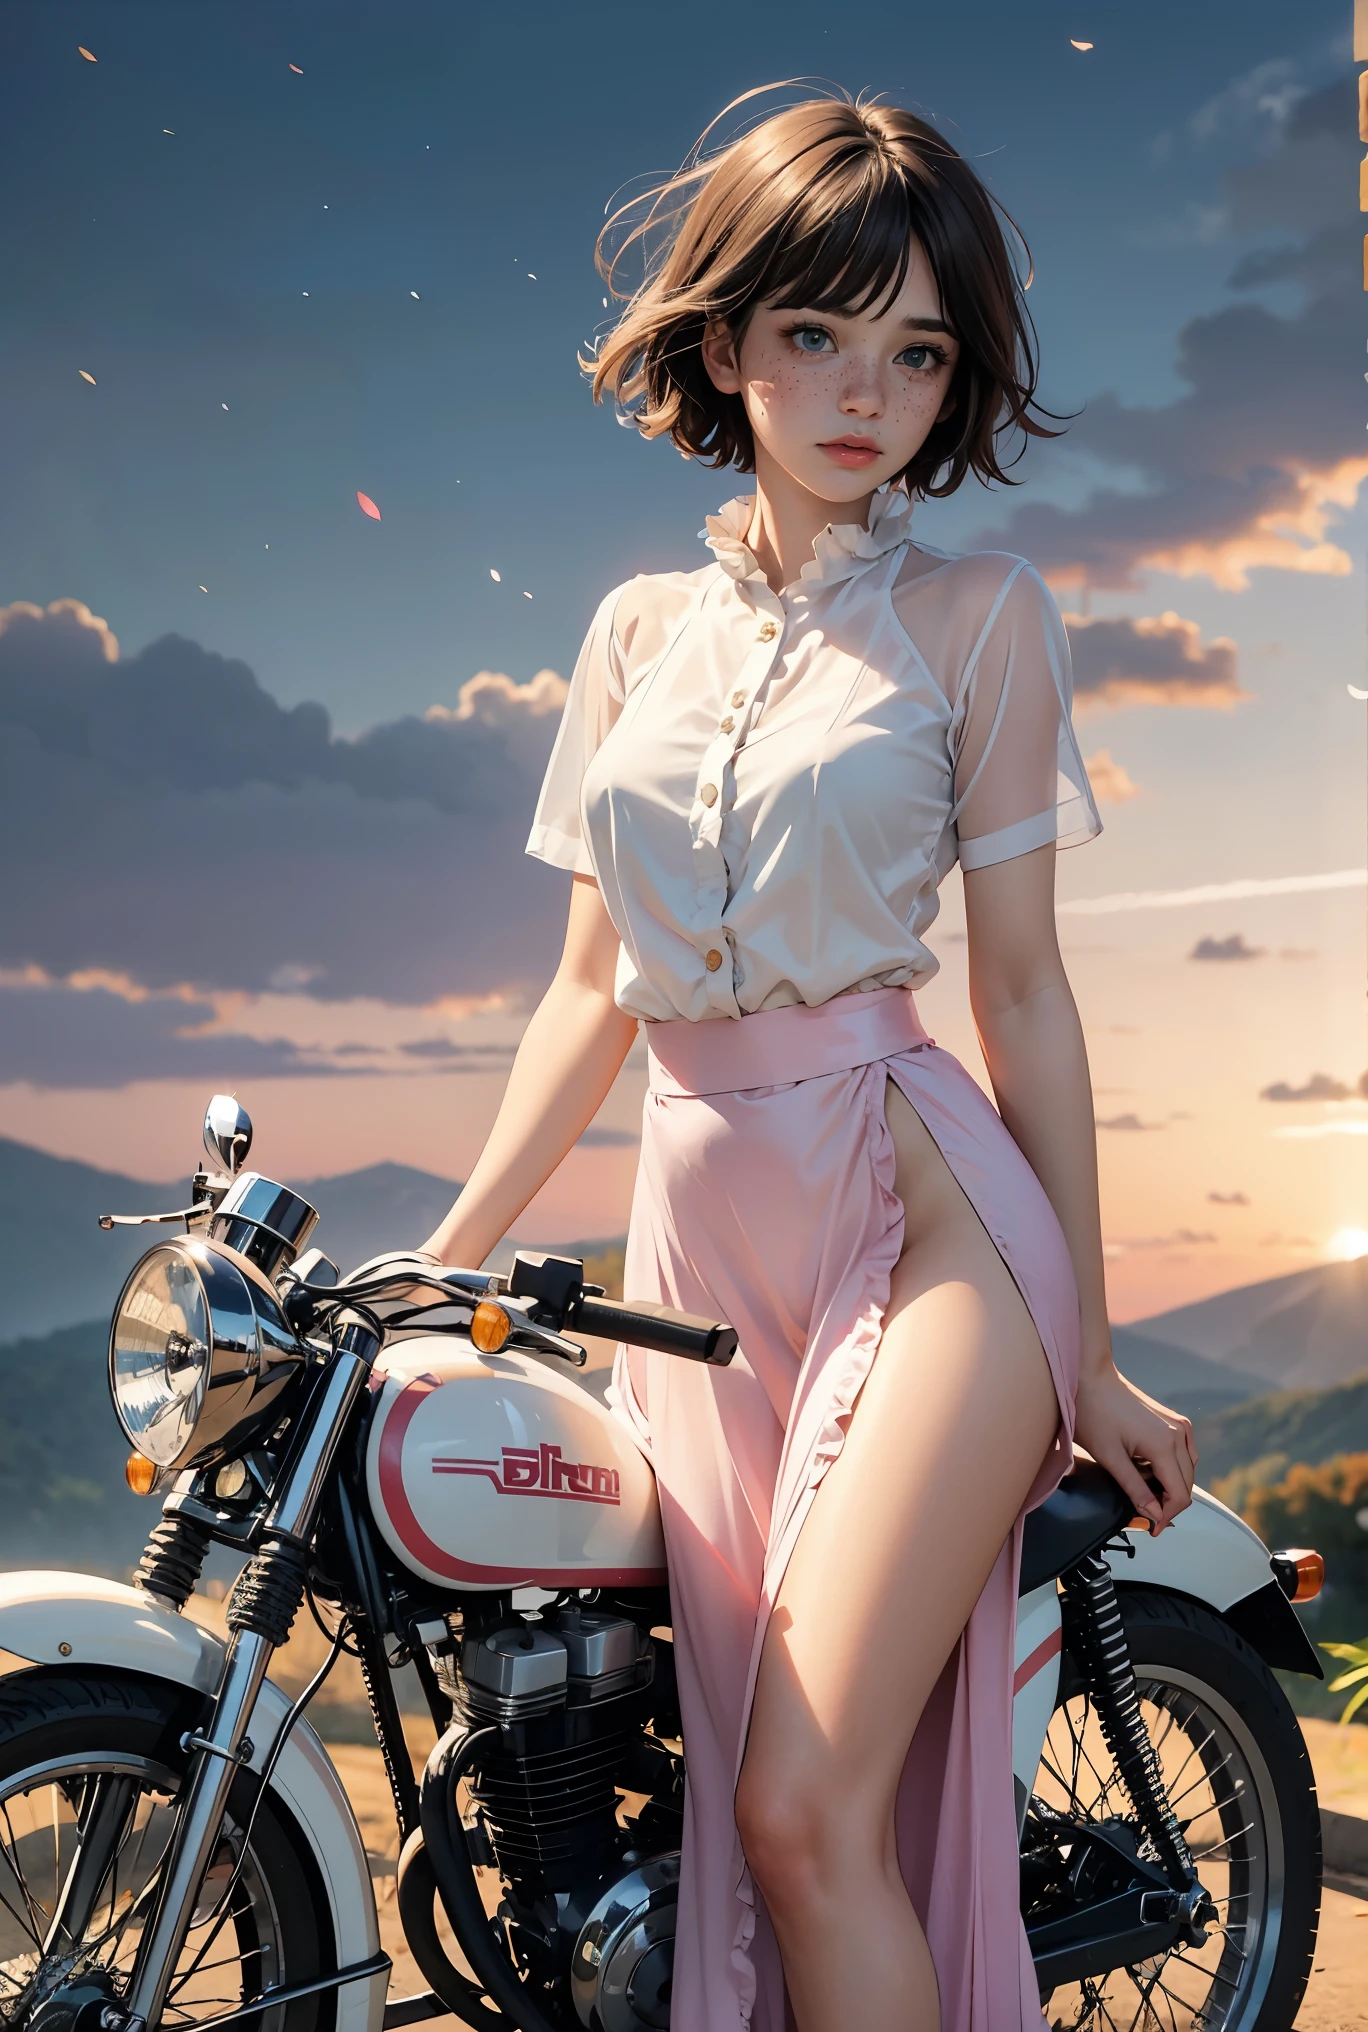 (((реалистичный))), (Девушка стоит перед старинным мотоциклом:1.79), девушка фокус, ((Видеть сквозь белую рубашку с оборками:1.3), (Полный снимок), (розовая атласная юбка макси:1.3), нагота, (потный)), (мигающие трусики:1.2), 25 лет, (красивые пухлые облака, закатное небо), (Сумерки, Пышный осенний склон холма Пандора мир фон:1.5), (, Стройный, Тонкое тело, пухлый сосок:1.3), (фотография, реалистичный, боке, размытие), ((волнистая короткая стрижка боб)), (сениматические огни, мягкий свет:1.3)